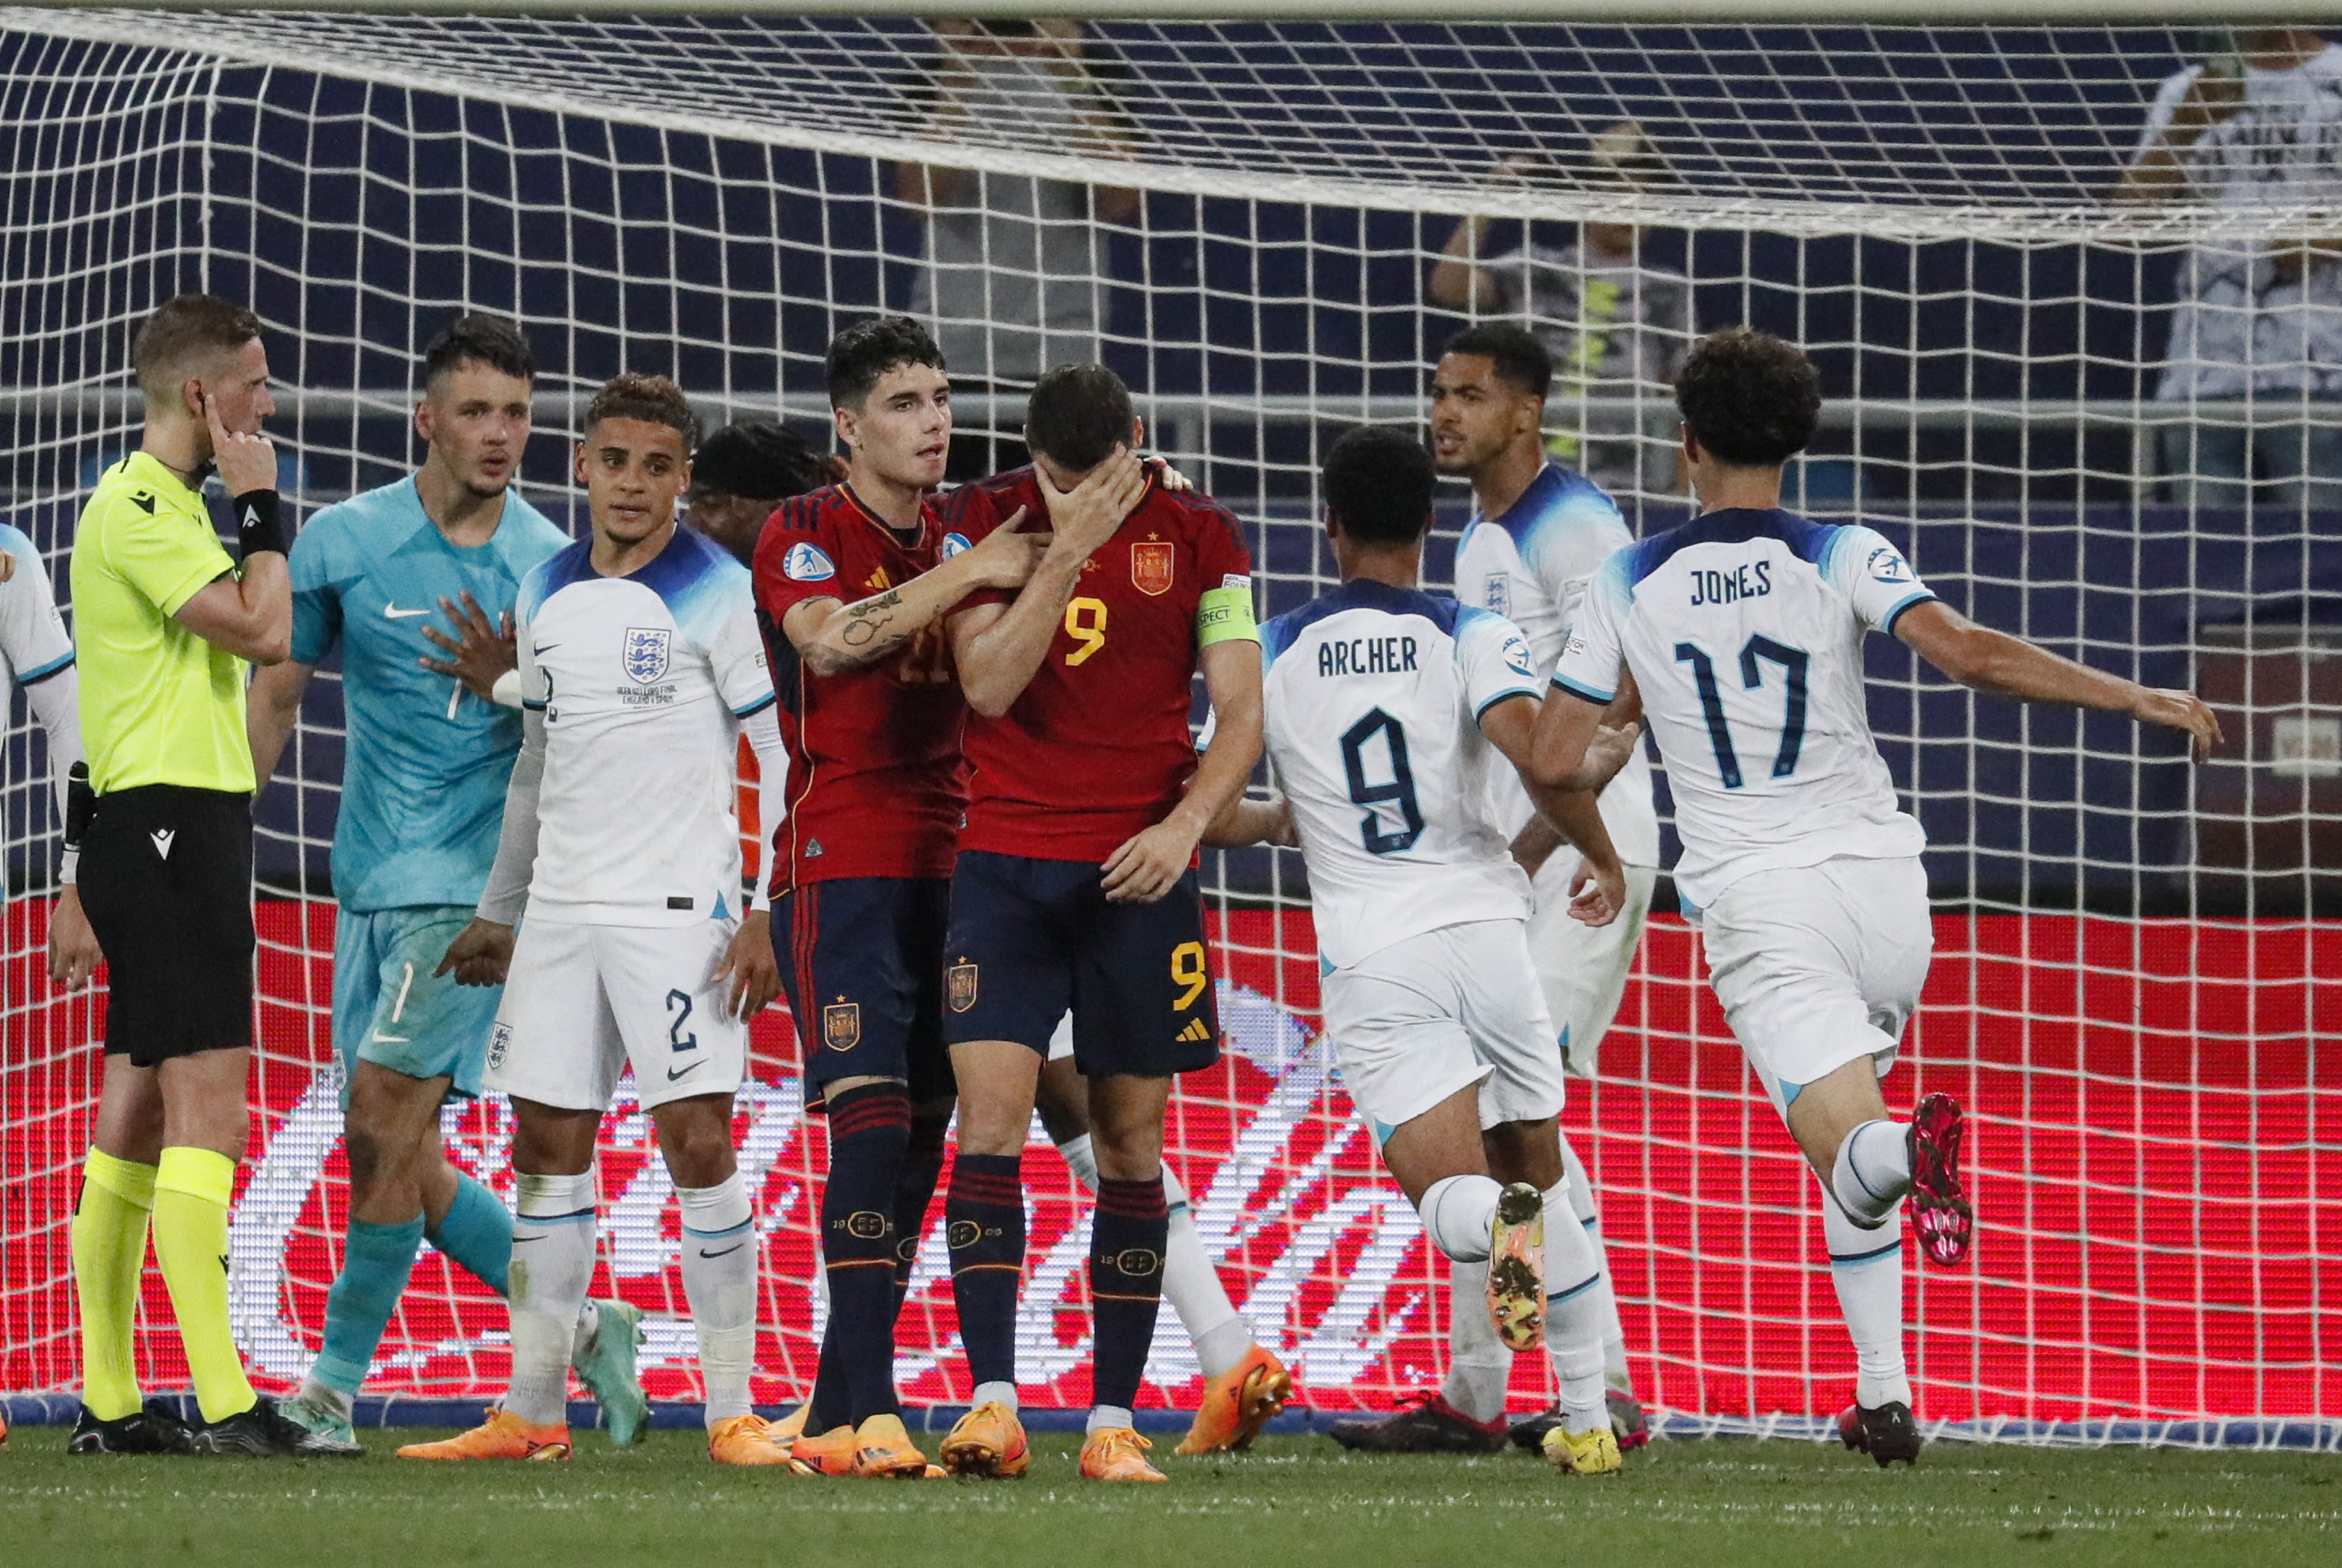 Inglaterra e Espanha goleiam e vão disputar a final da Eurocopa Sub-21, eurocopa sub-21